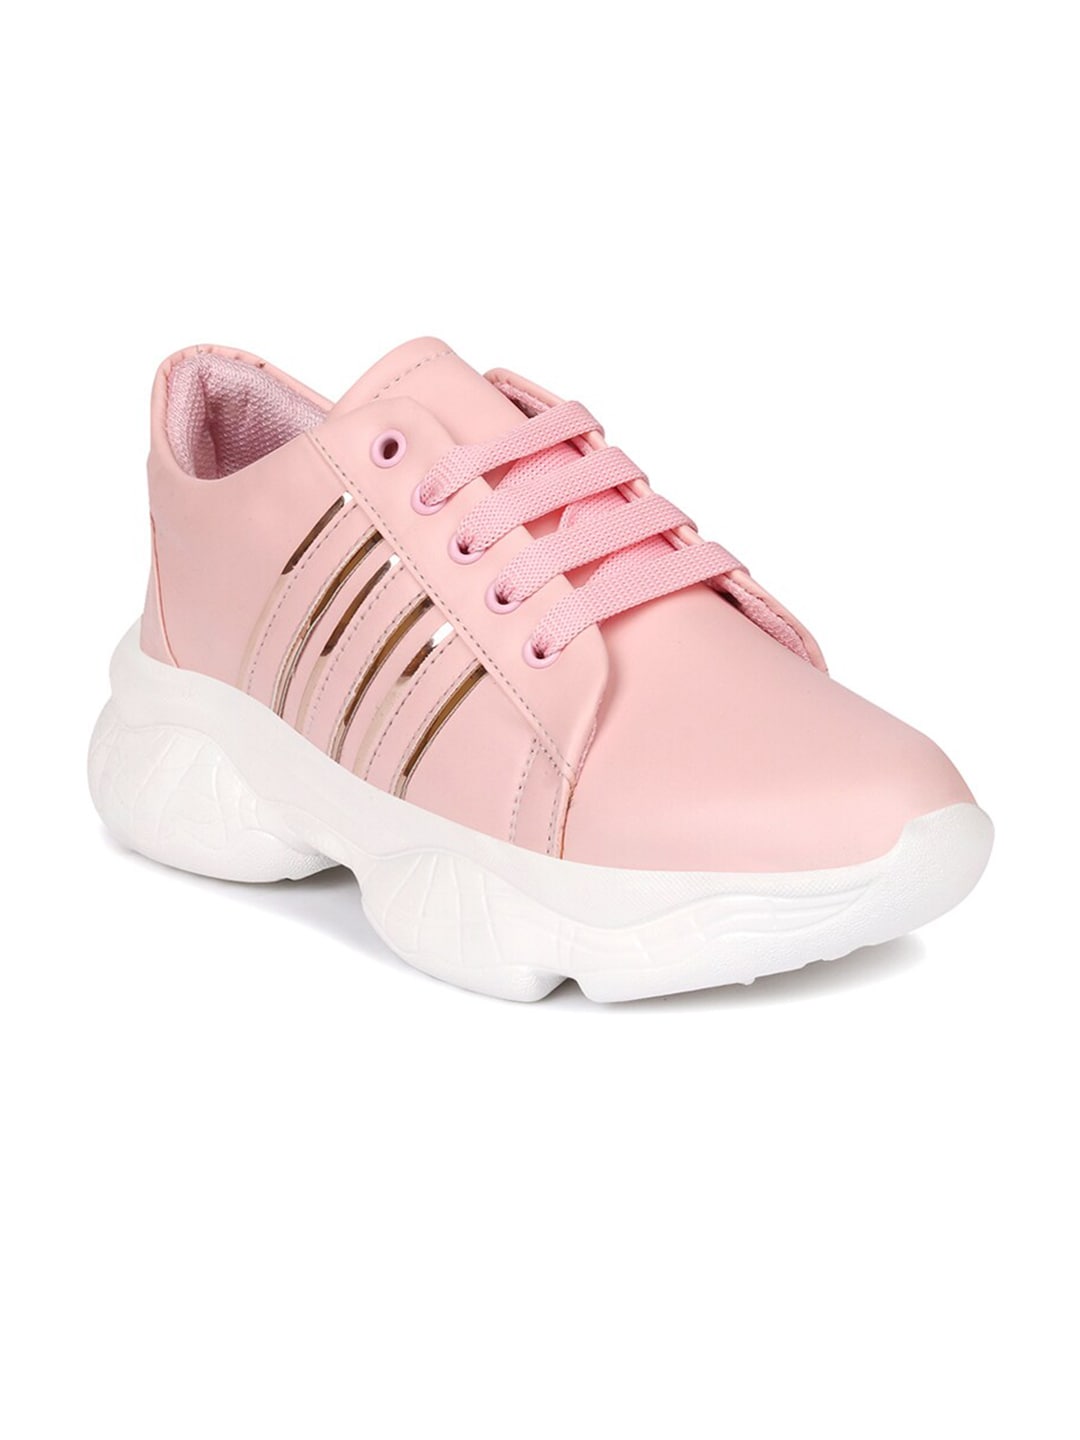 Longwalk Women Pink Walking Shoes Price in India